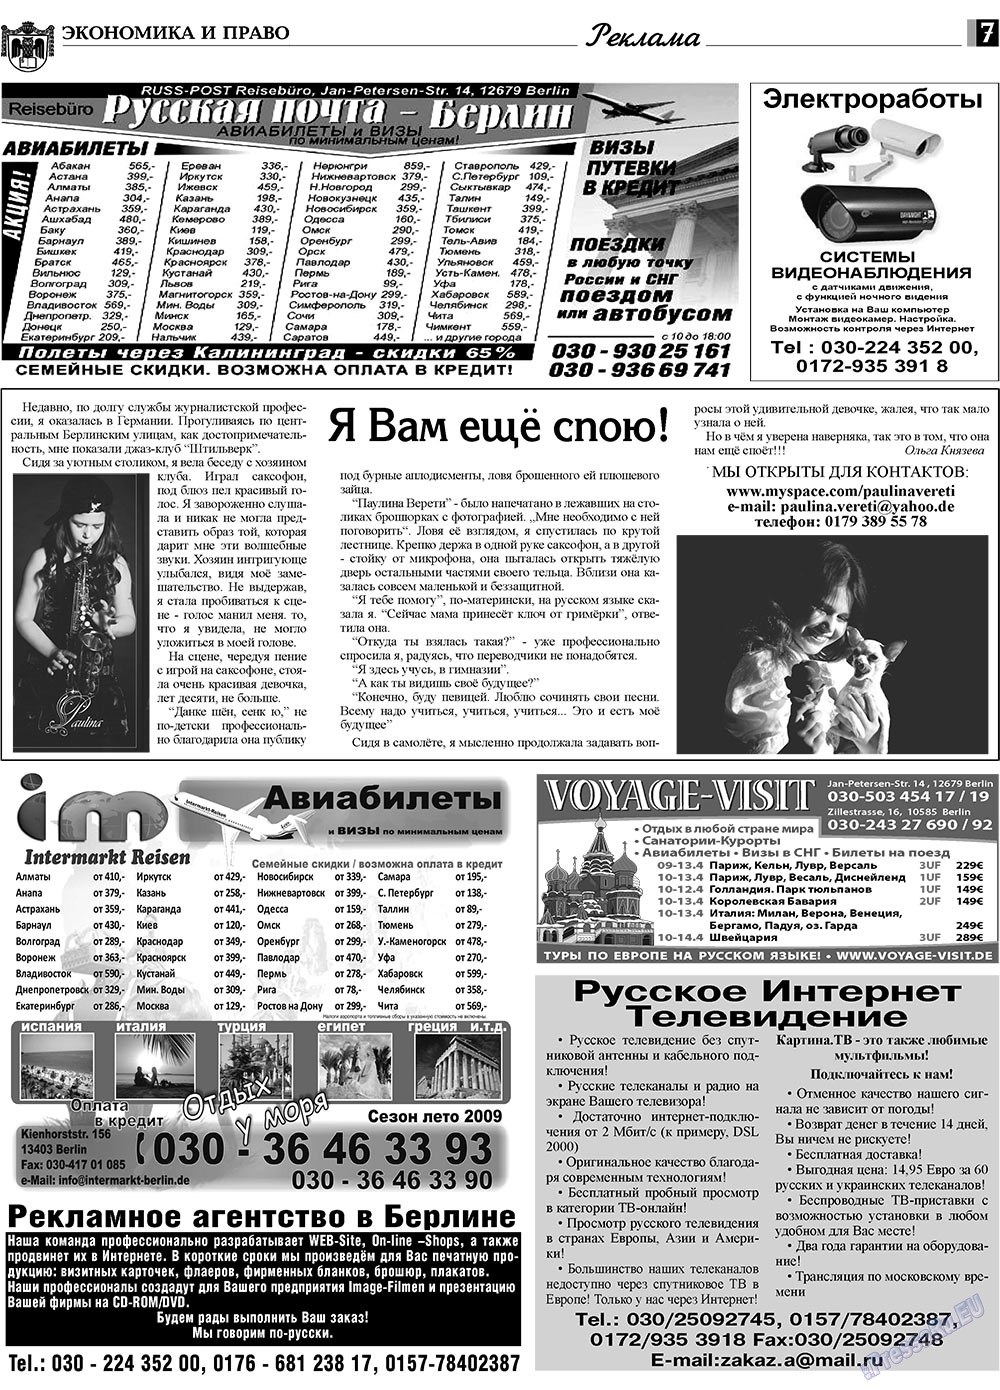 Экономика и право, газета. 2009 №4 стр.7